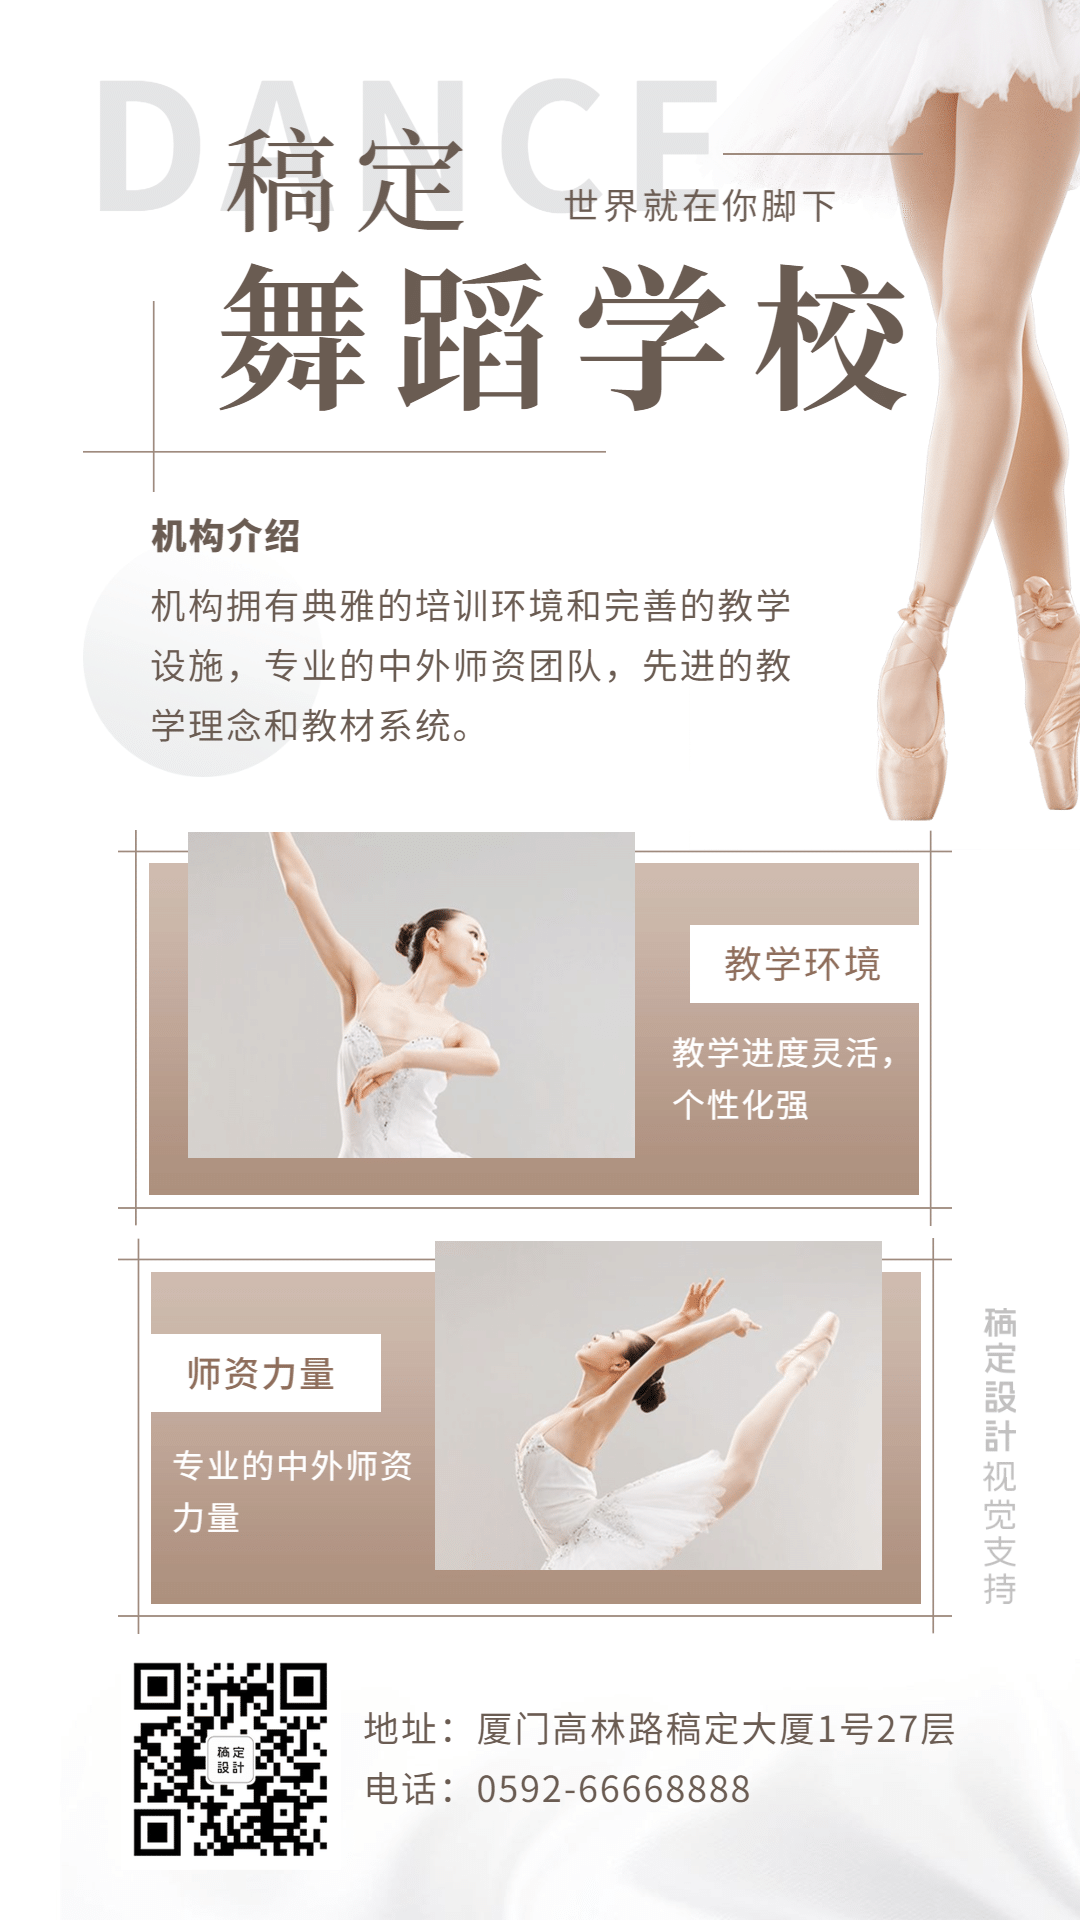 舞蹈培训机构介绍竖屏海报